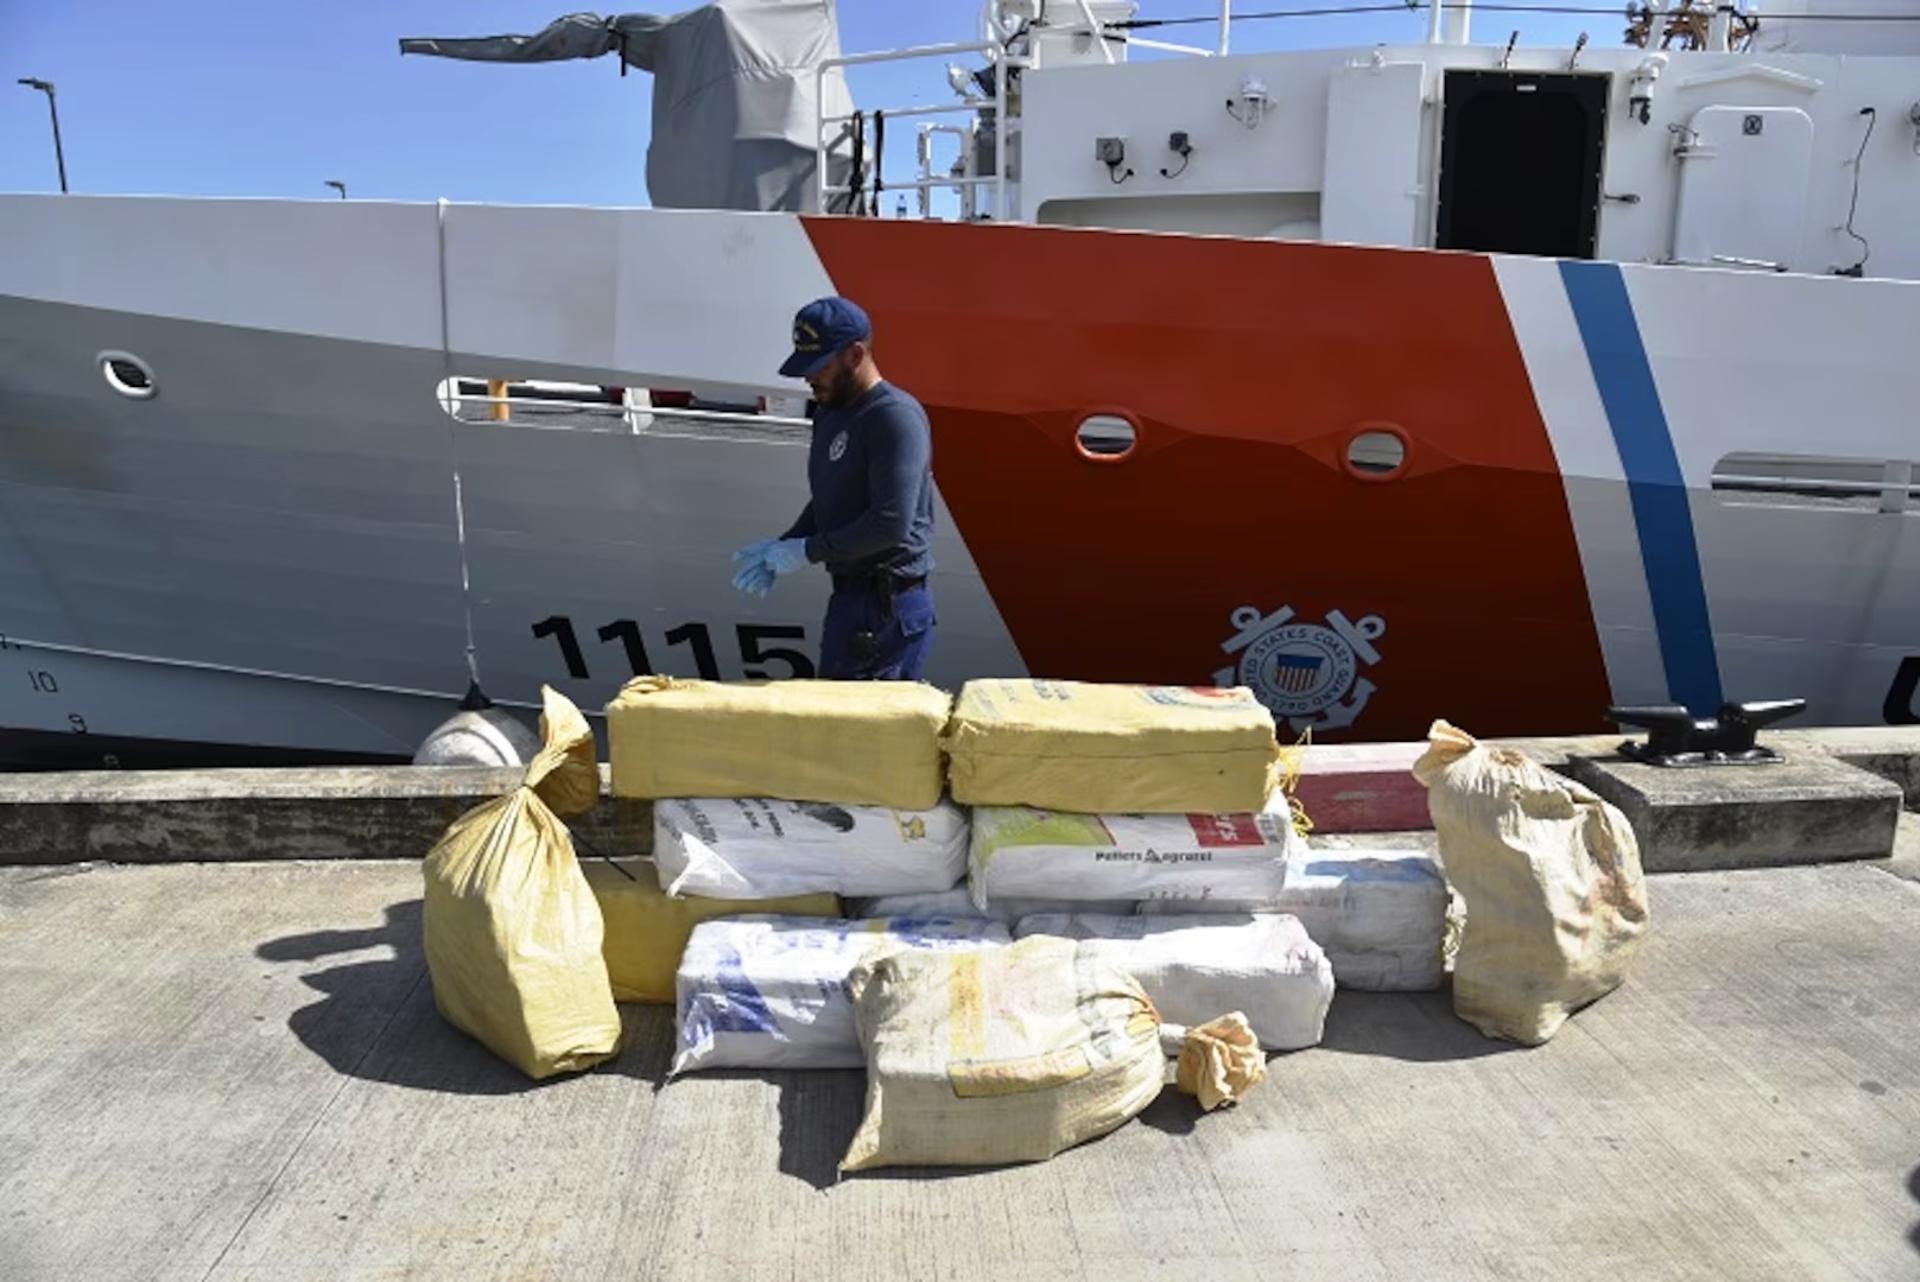 Fotografía cedida por la Guardia Costera estadounidense donde se muestran unos paquetes con 411 kilogramos (901 libras) de cocaína, valorado en 10,2 millones de dólares, descargados en el puerto de San Juan (Puerto Rico). EFE/Guardia Costera EEUU /SOLO USO EDITORIAL/NO VENTAS/SOLO DISPONIBLE PARA ILUSTRAR LA NOTICIA QUE ACOMPAÑA/CRÉDITO OBLIGATORIO
